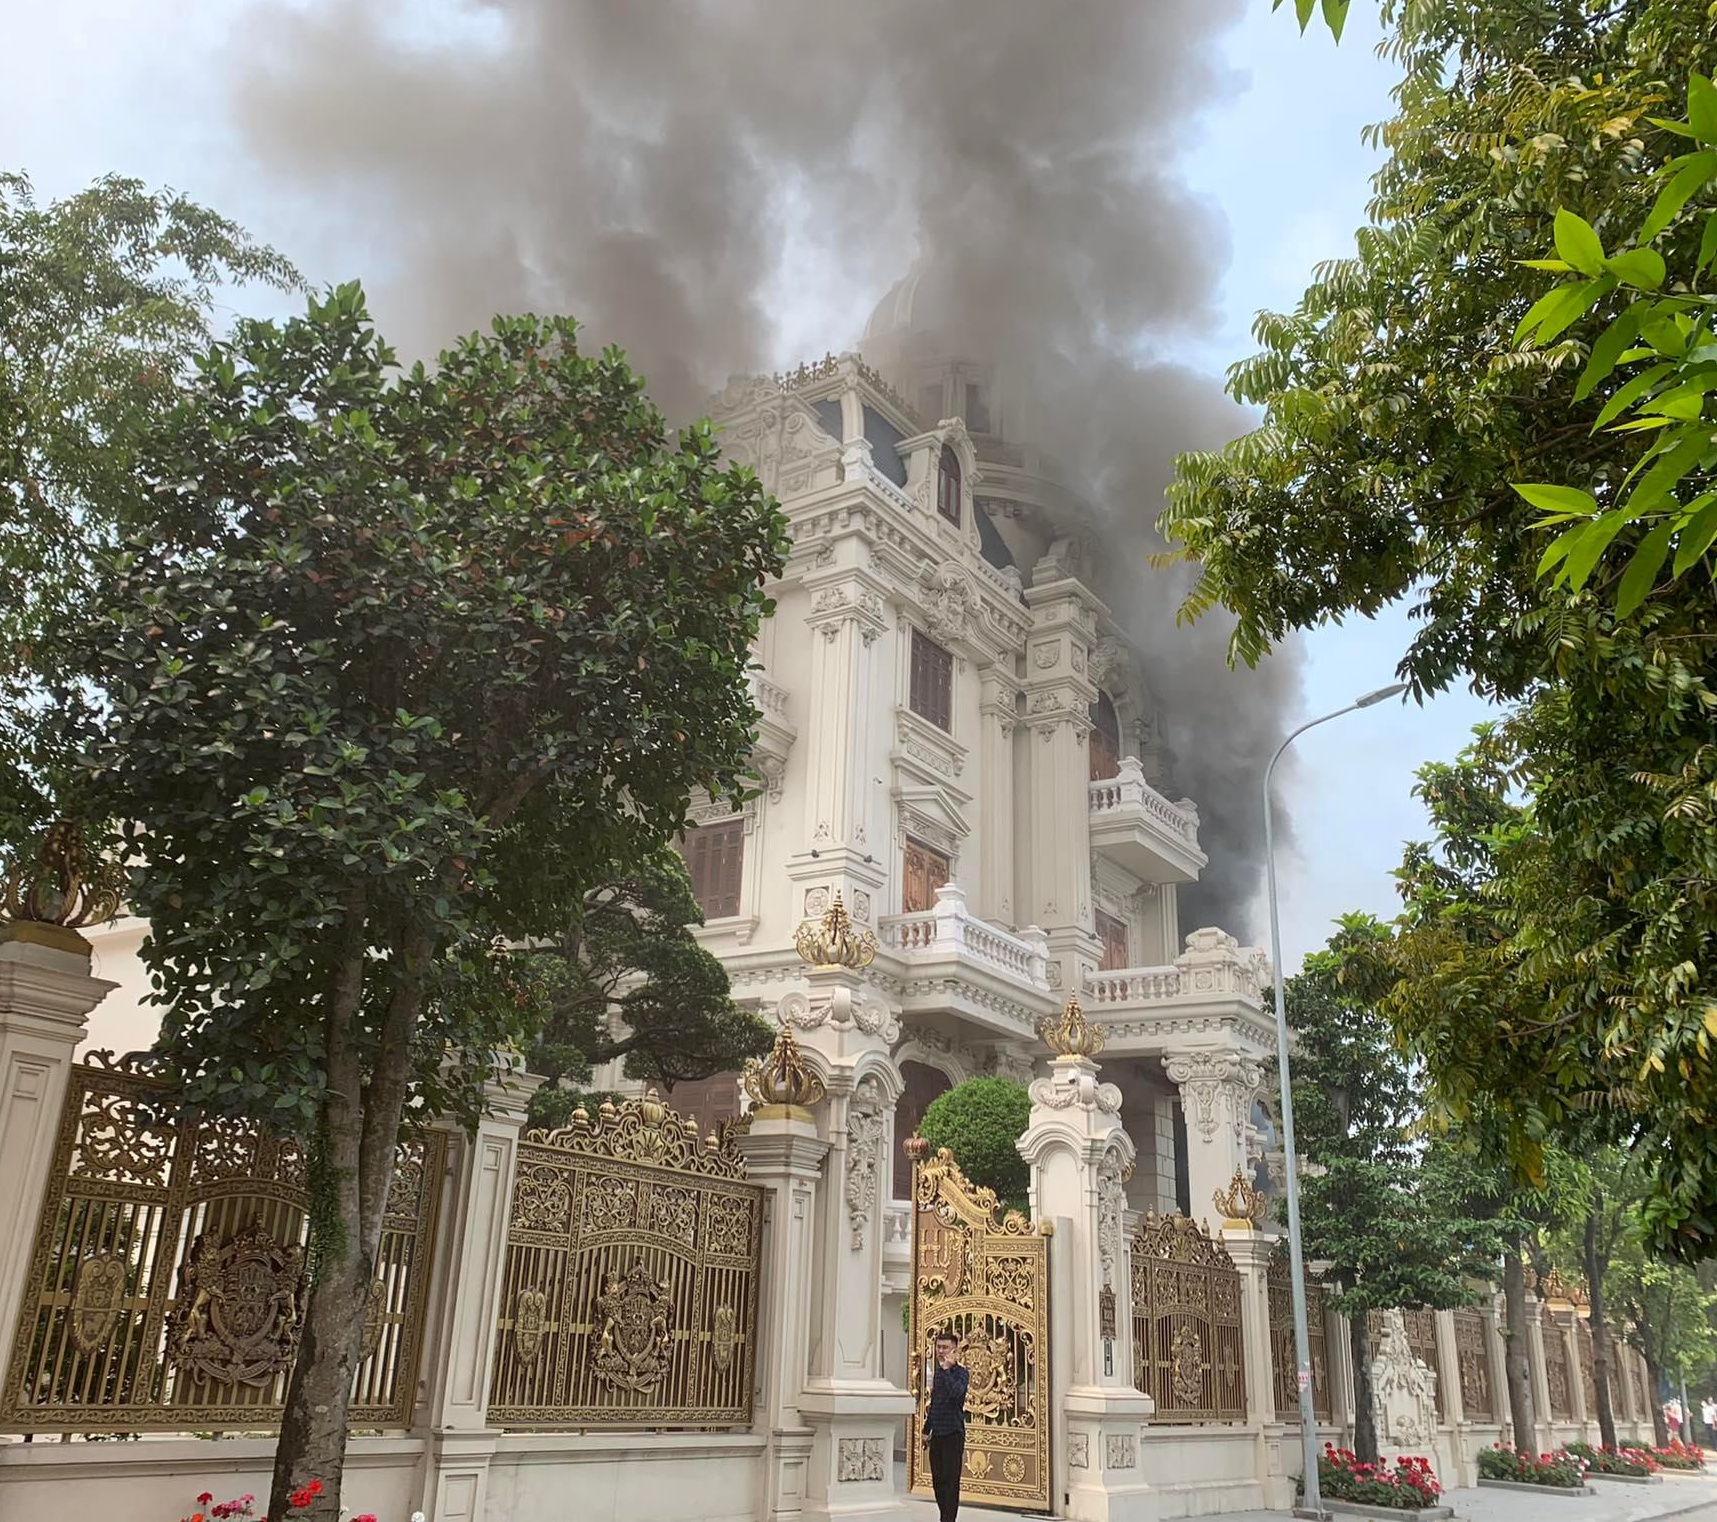 Kinh hoàng đám cháy tại lâu đài trăm tỷ ở Quảng Ninh, người dân phát hoảng vì nhà toàn gỗ quý